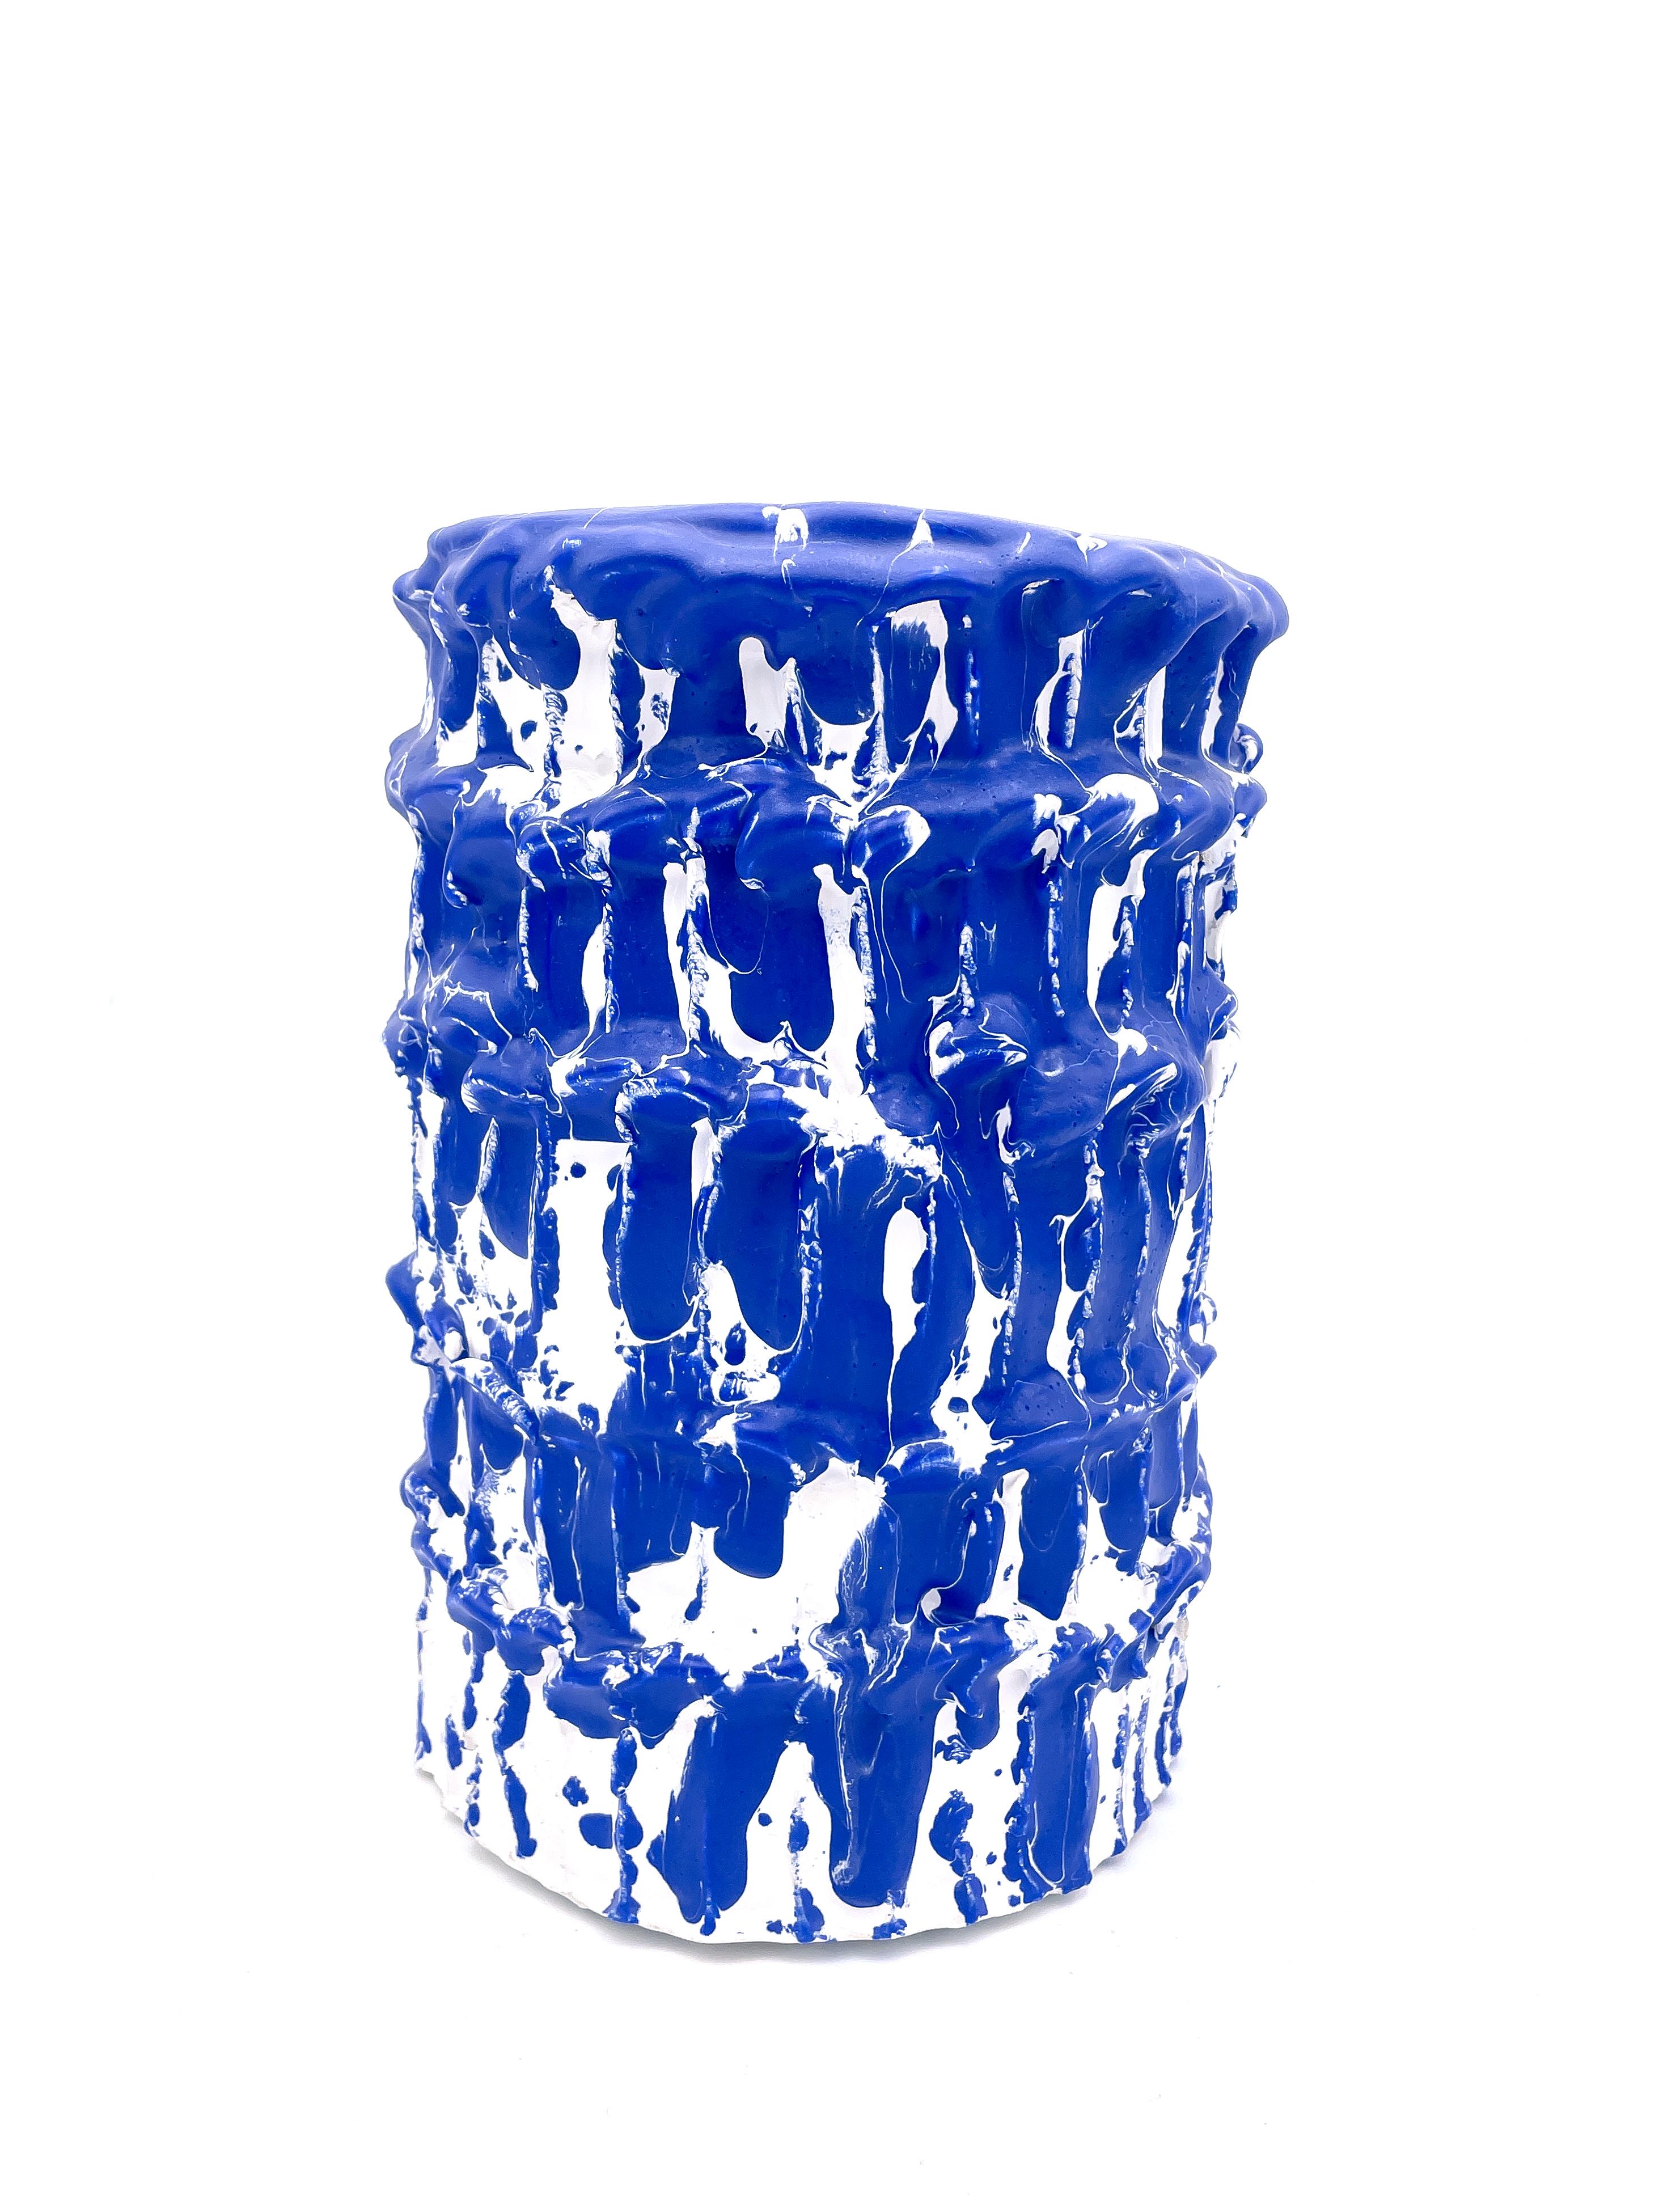 Glazed Onda Vase, Egyptian Blue and White 01 For Sale